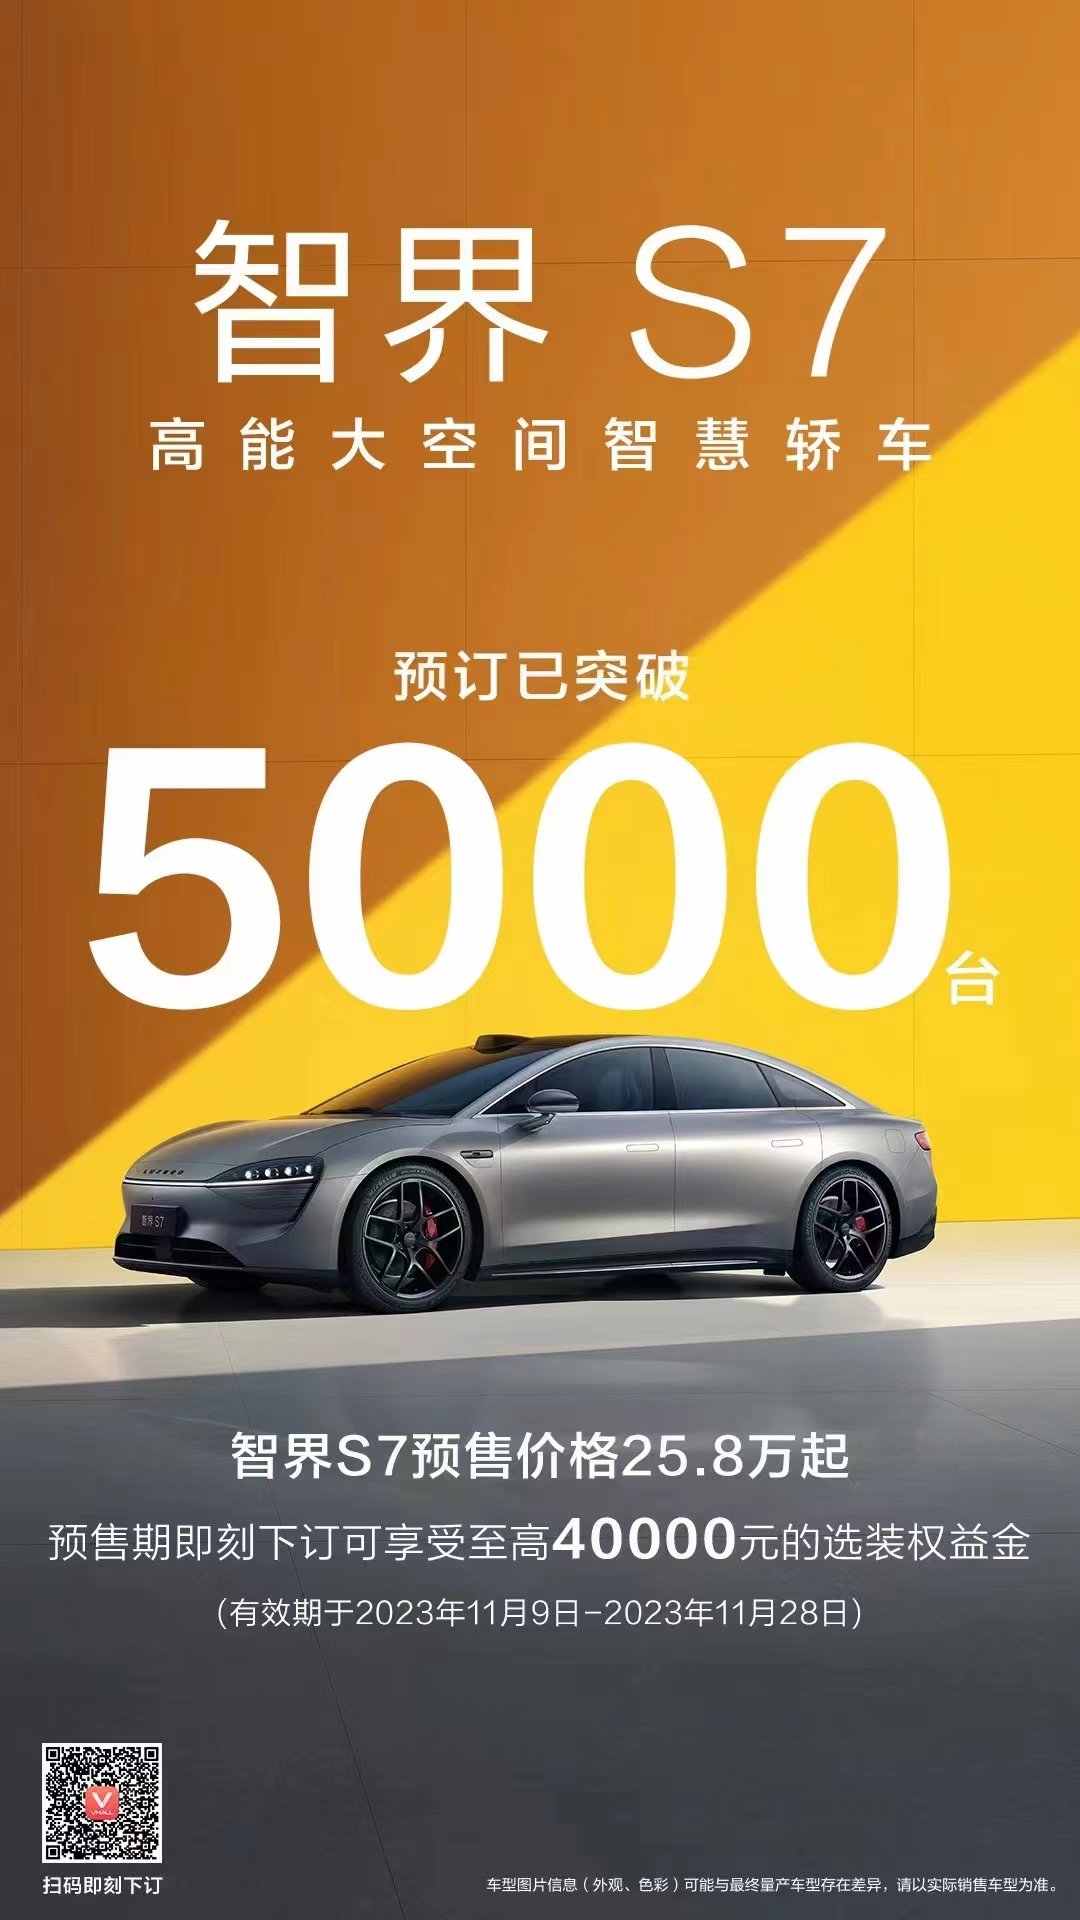 华为智选车首款轿车智界S7预订已突破5000台